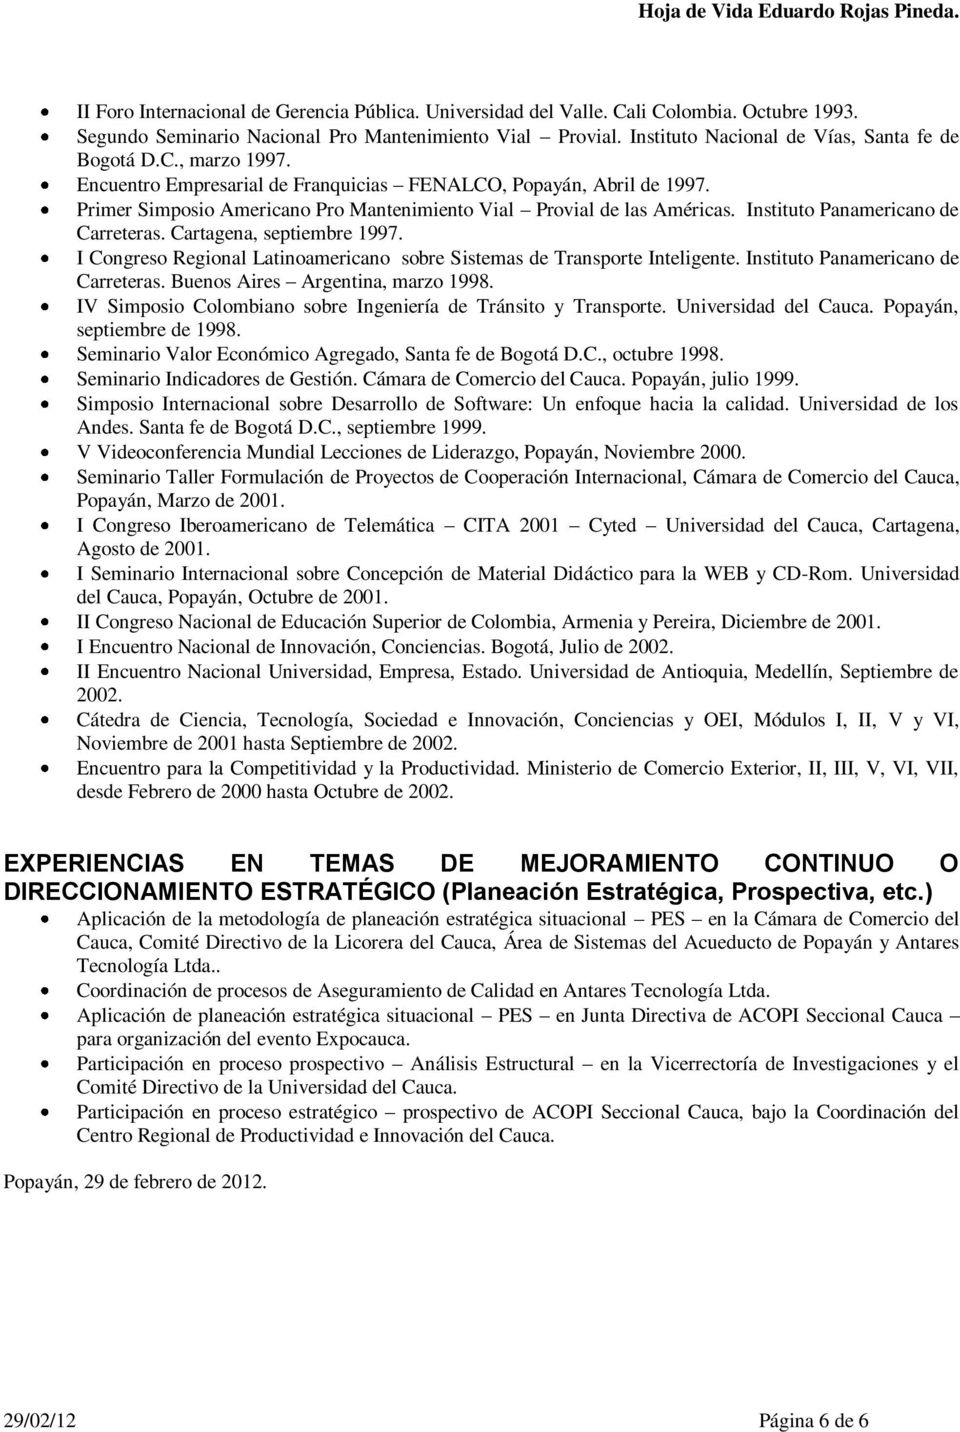 Primer Simposio Americano Pro Mantenimiento Vial Provial de las Américas. Instituto Panamericano de Carreteras. Cartagena, septiembre 1997.